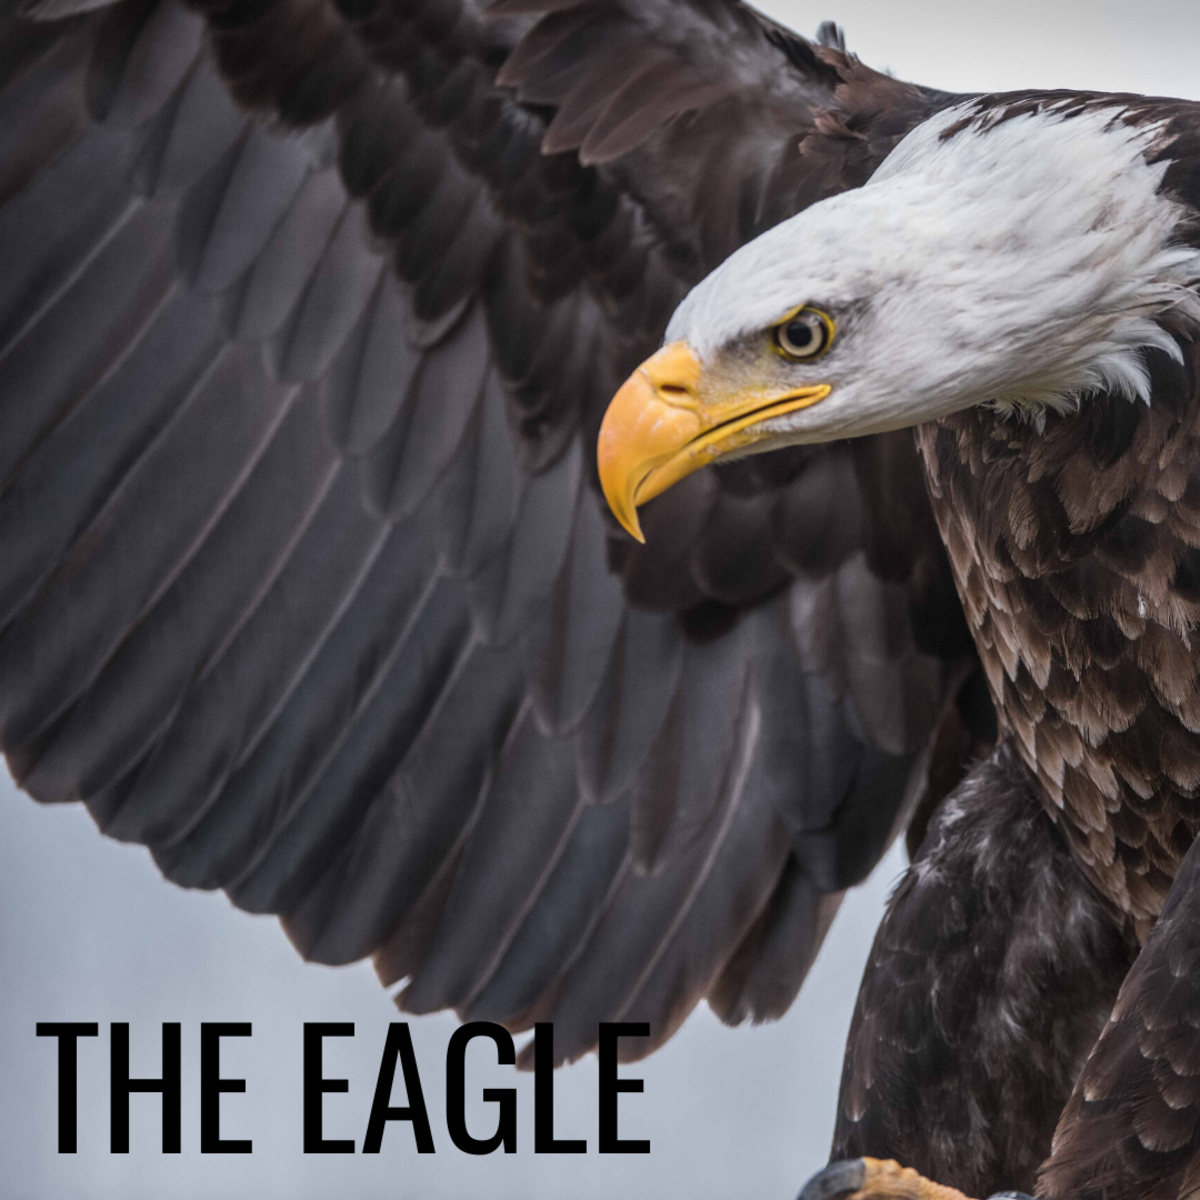 鹰象征着自由、长寿和力量。